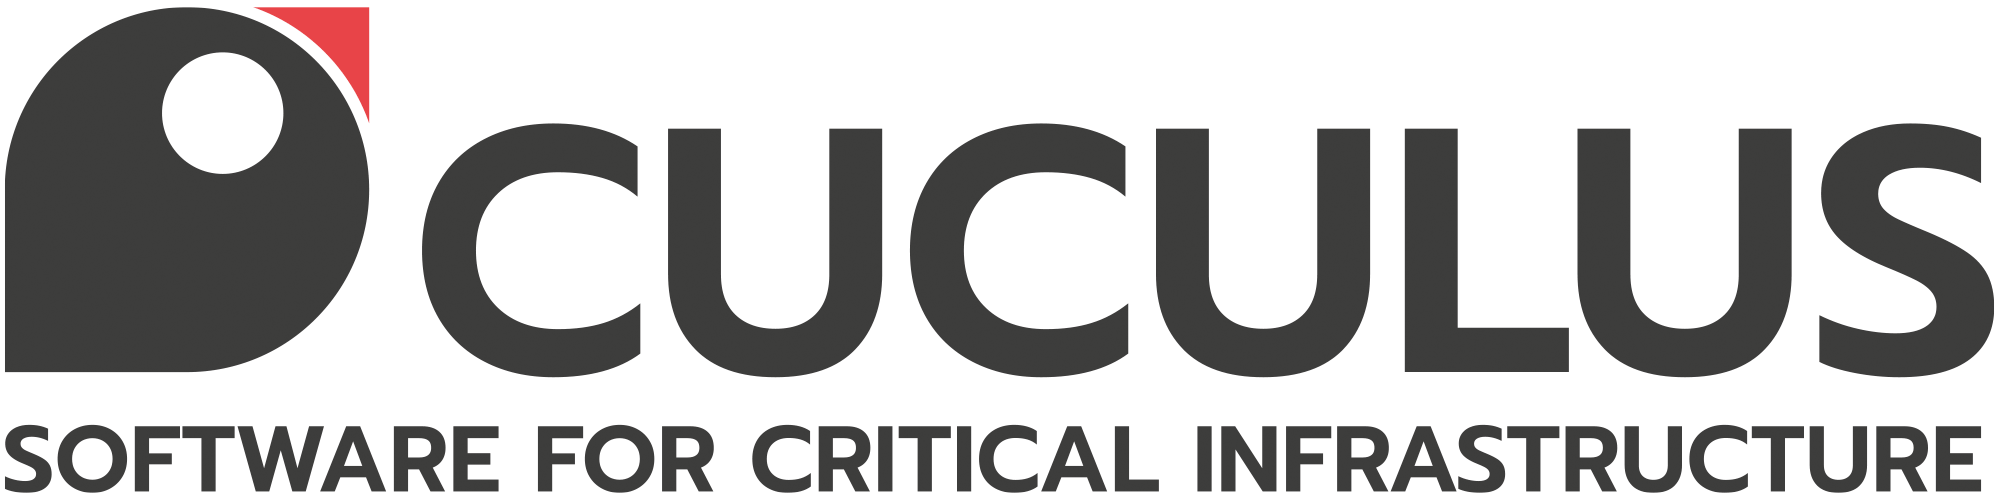 Cuculus Logo